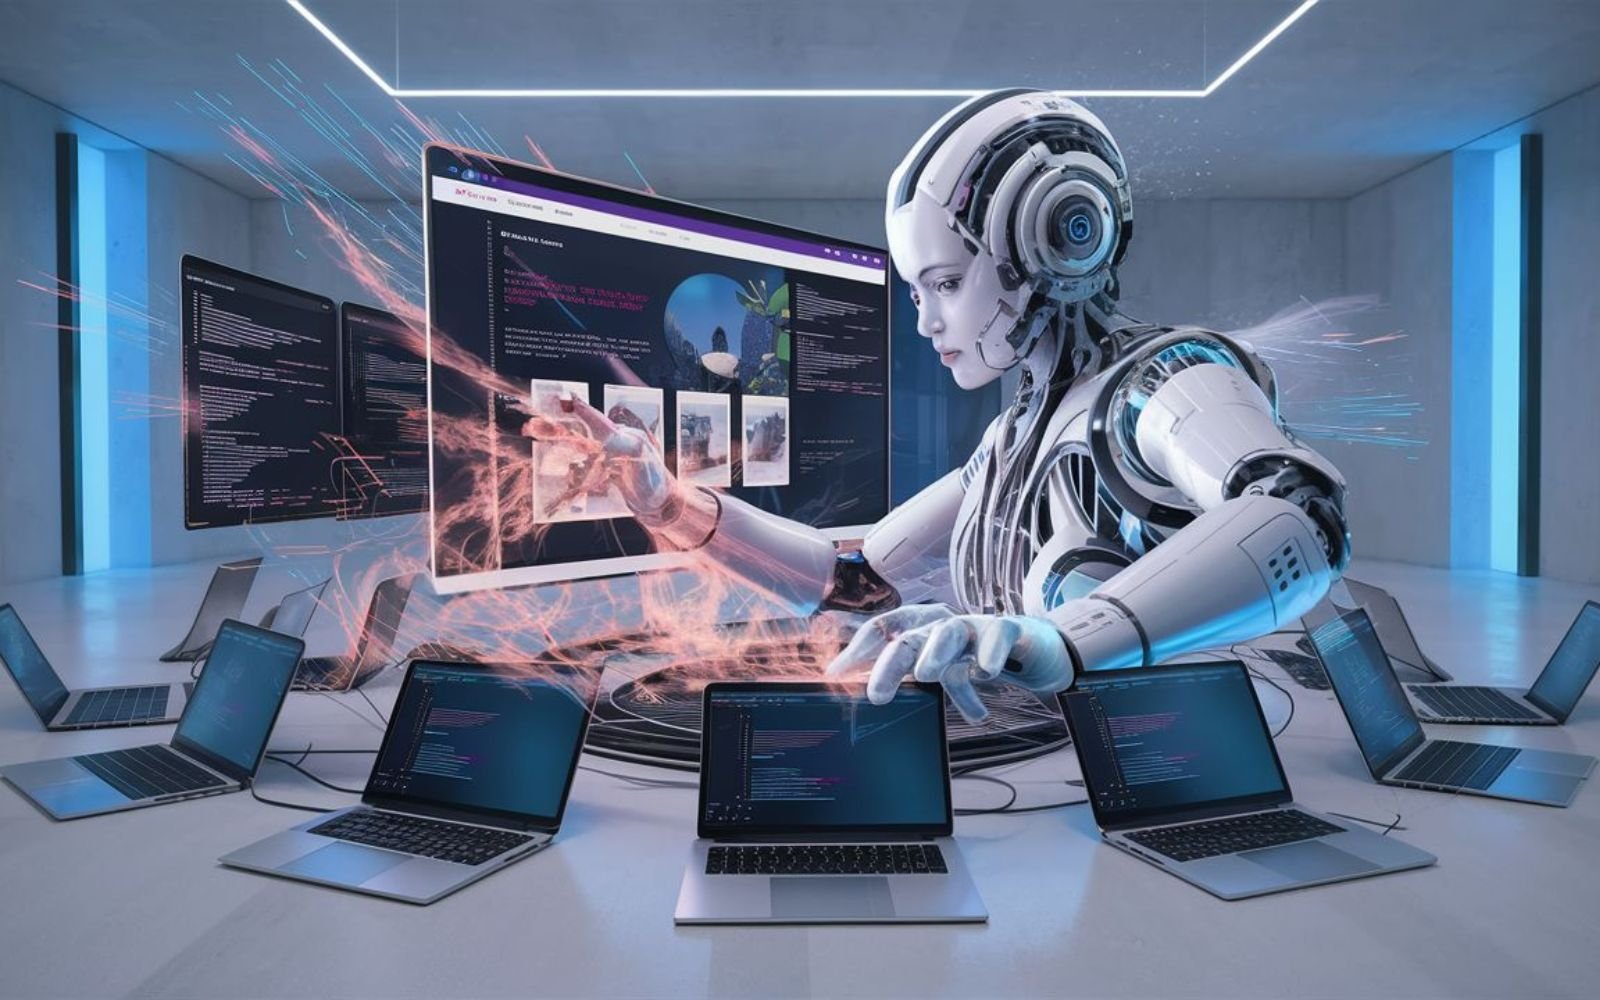 Ia utilise son intelligence artificielle pour créer un site web en une minute. L'IA est représentée par un hologramme flottant au-dessus de 10 ordinateurs portables. Les mains de l'IA se déplacent rapidement sur le clavier tandis que le site web prend forme sous ses yeux.